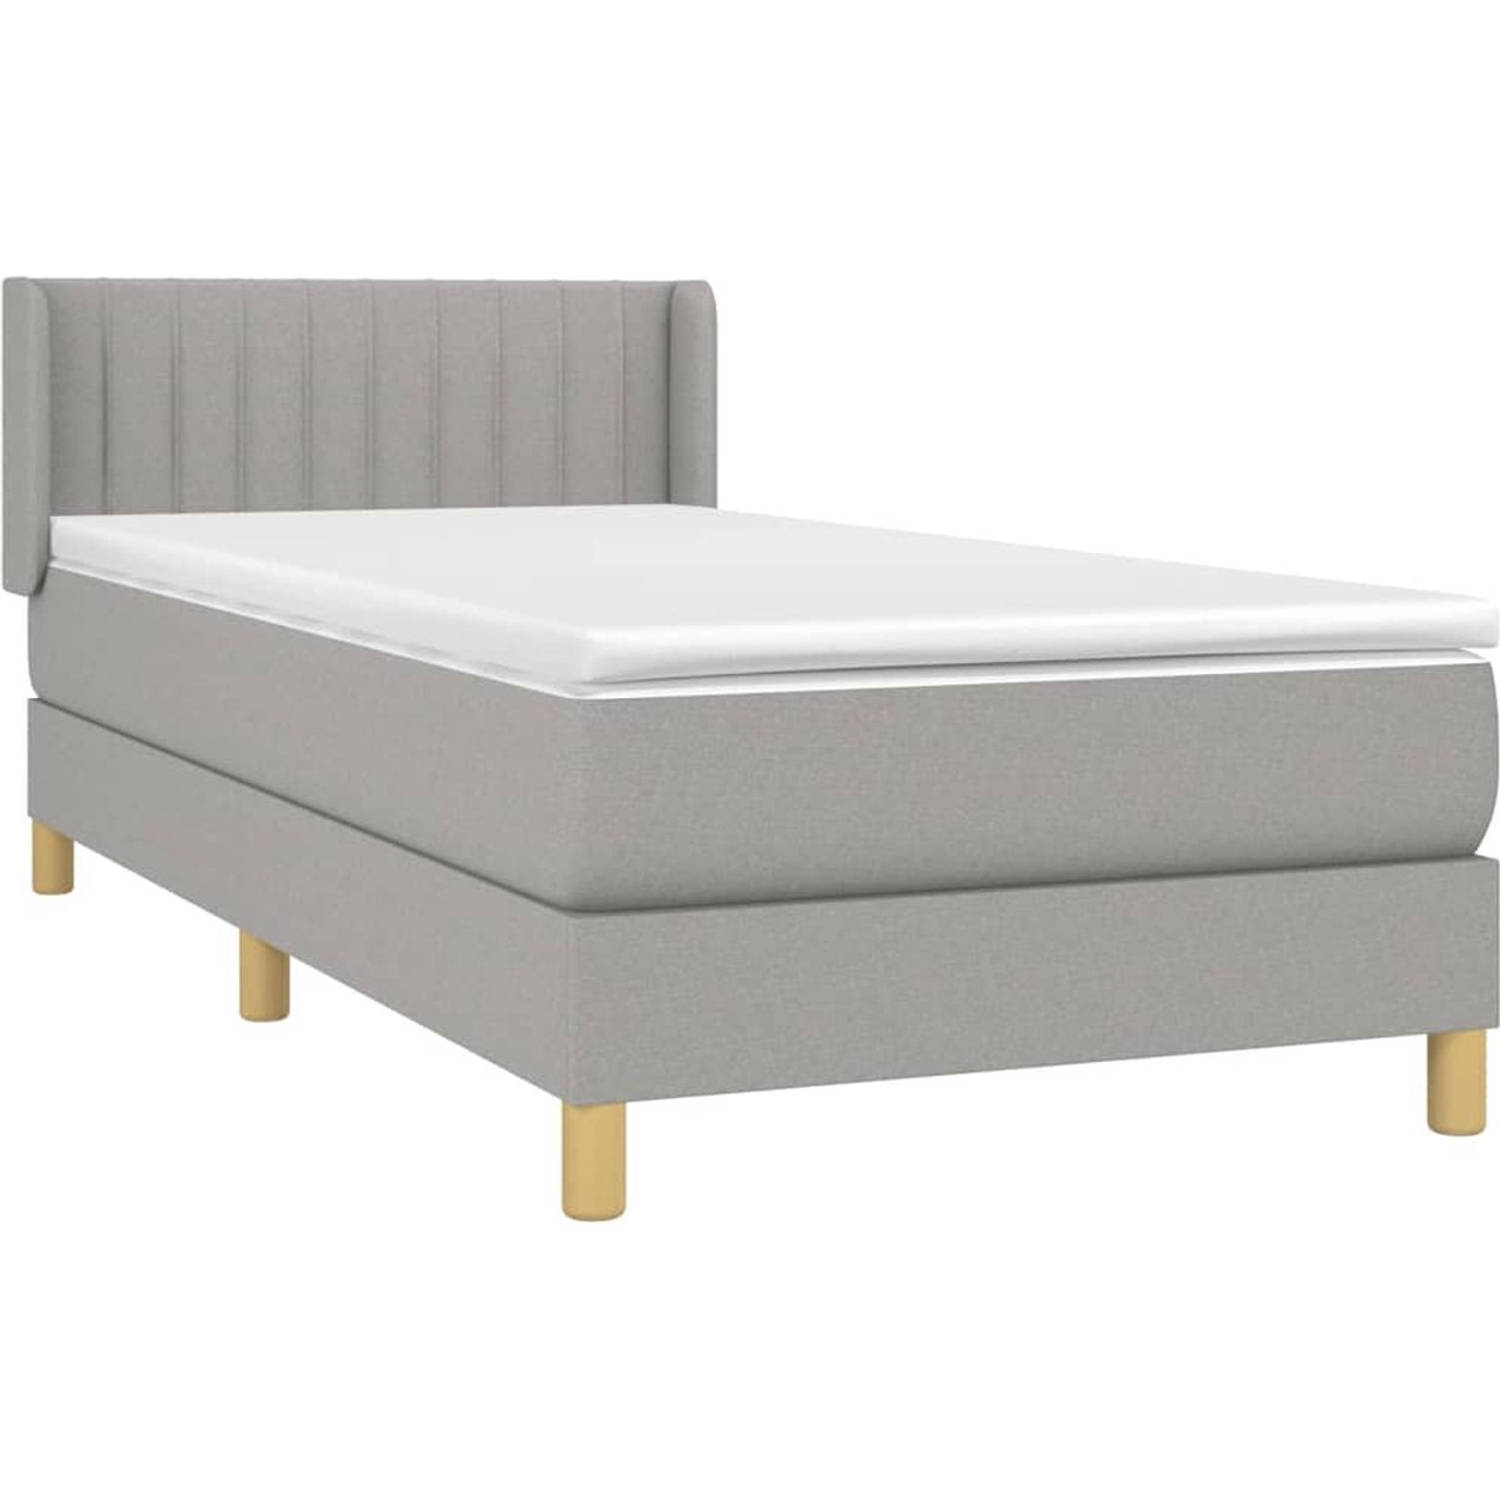 The Living Store Boxspringbed - Comfort - Bed - 203 x 83 x 78/88 cm - Lichtgrijs - Pocketvering matras - Middelharde ondersteuning - Huidvriendelijk topmatras - Inclusief montageha